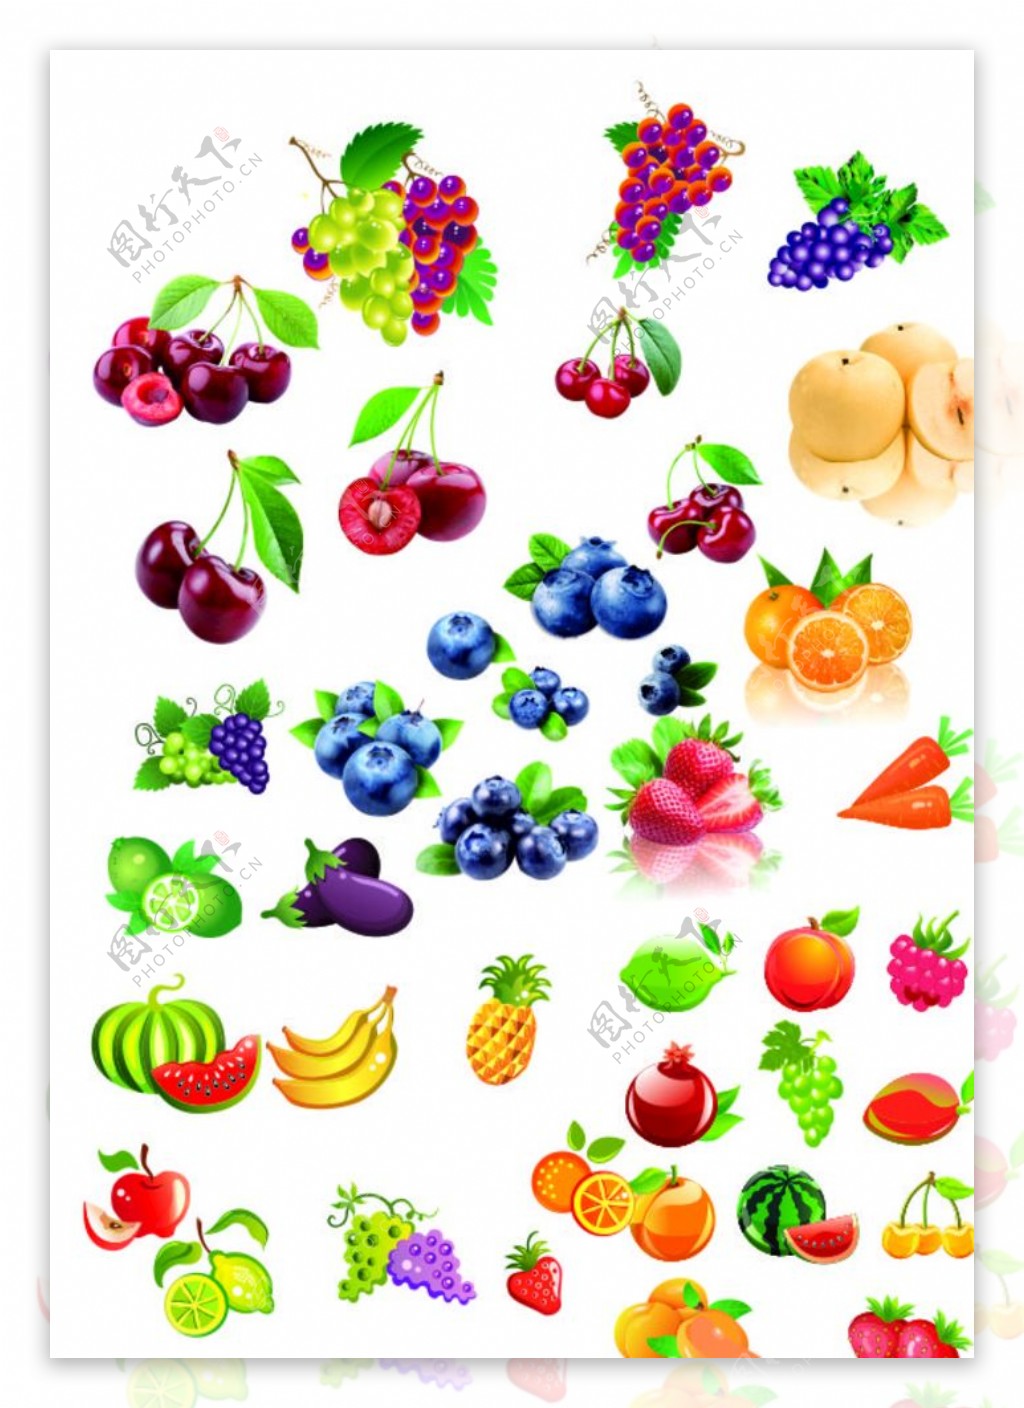 水果集合各种水果